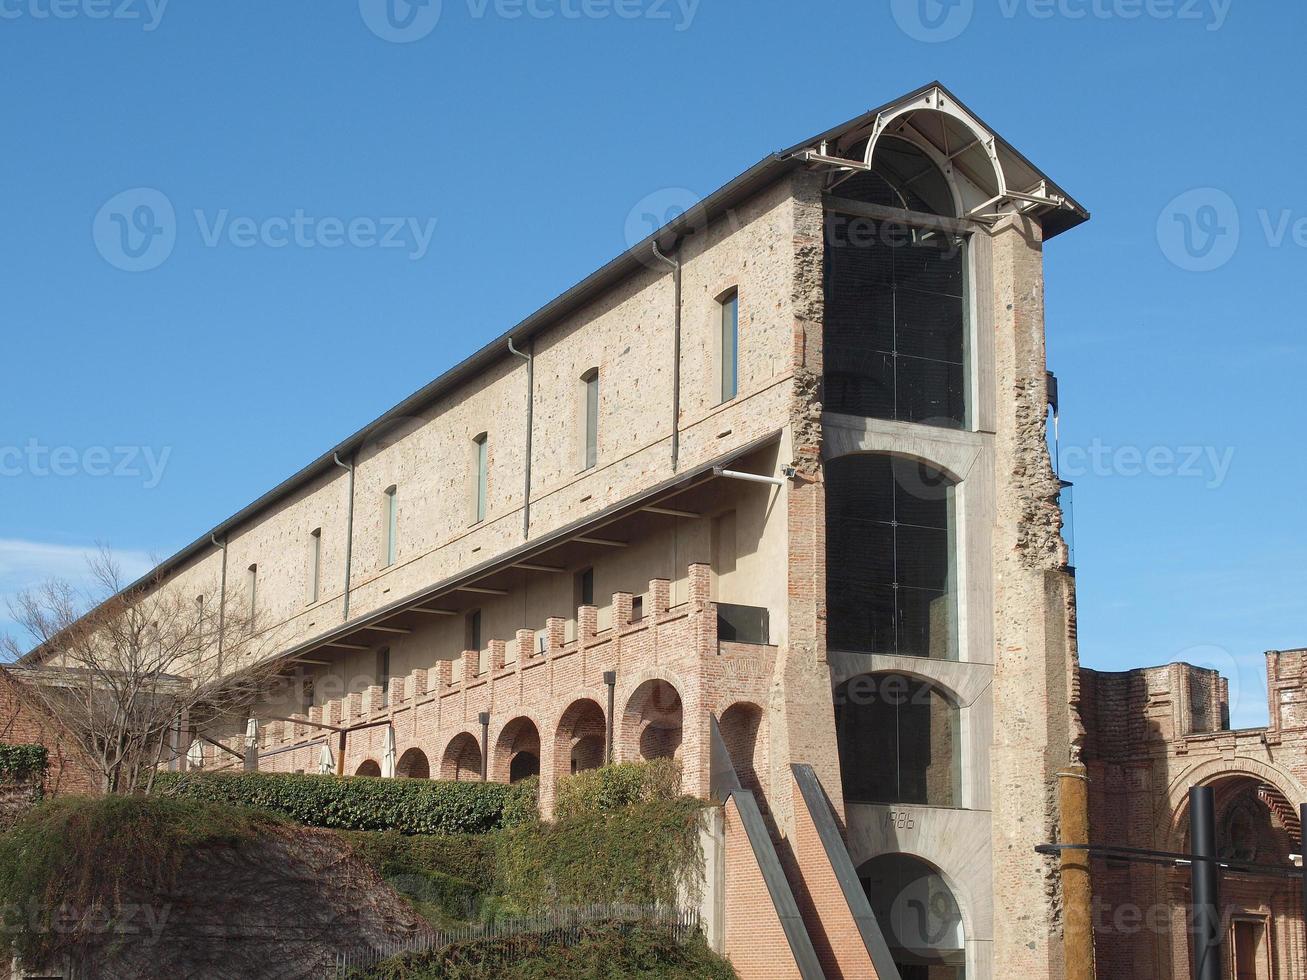 Castello di Rivoli, Italy photo